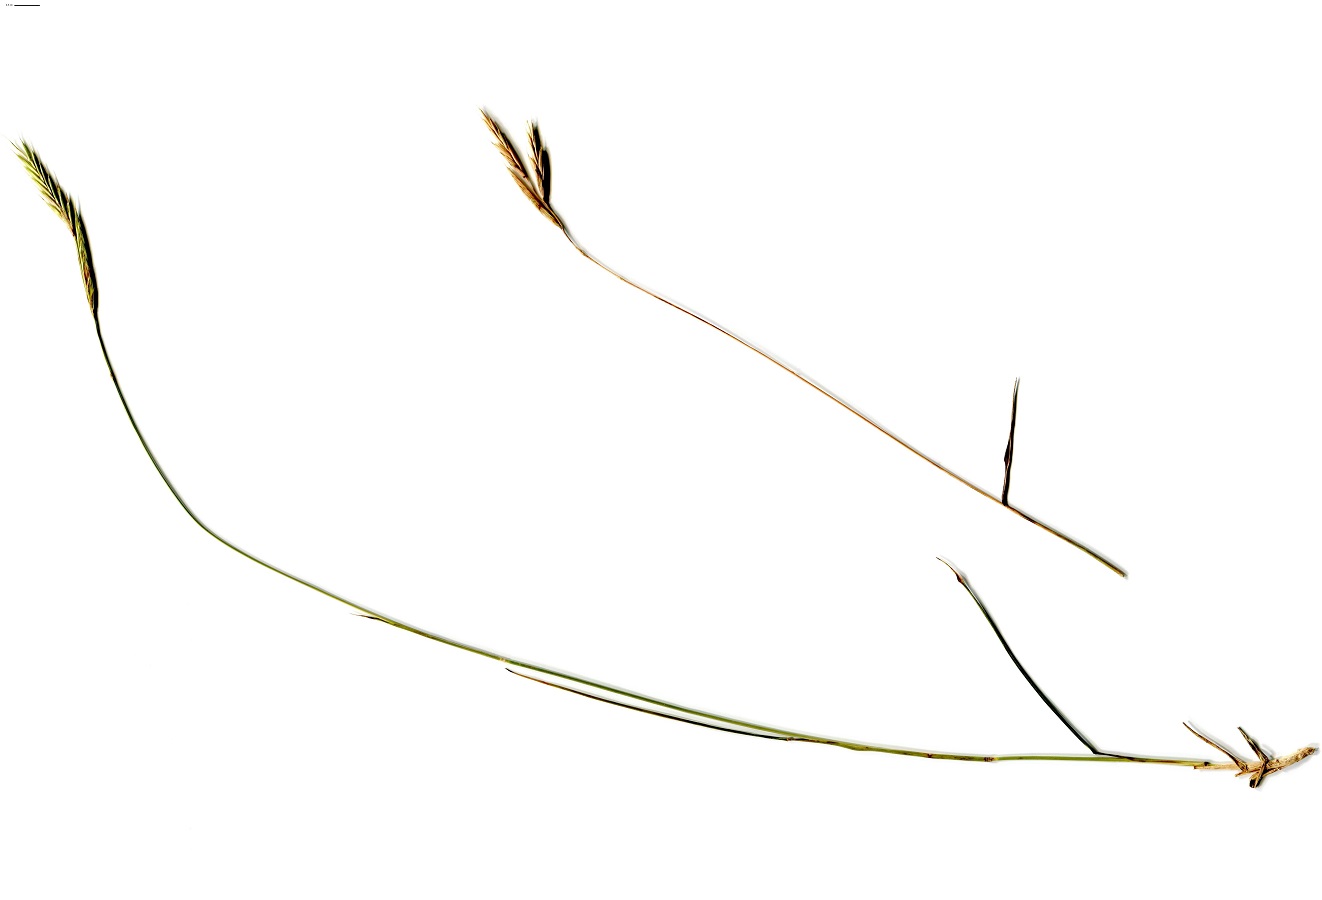 Brachypodium retusum (Poaceae)